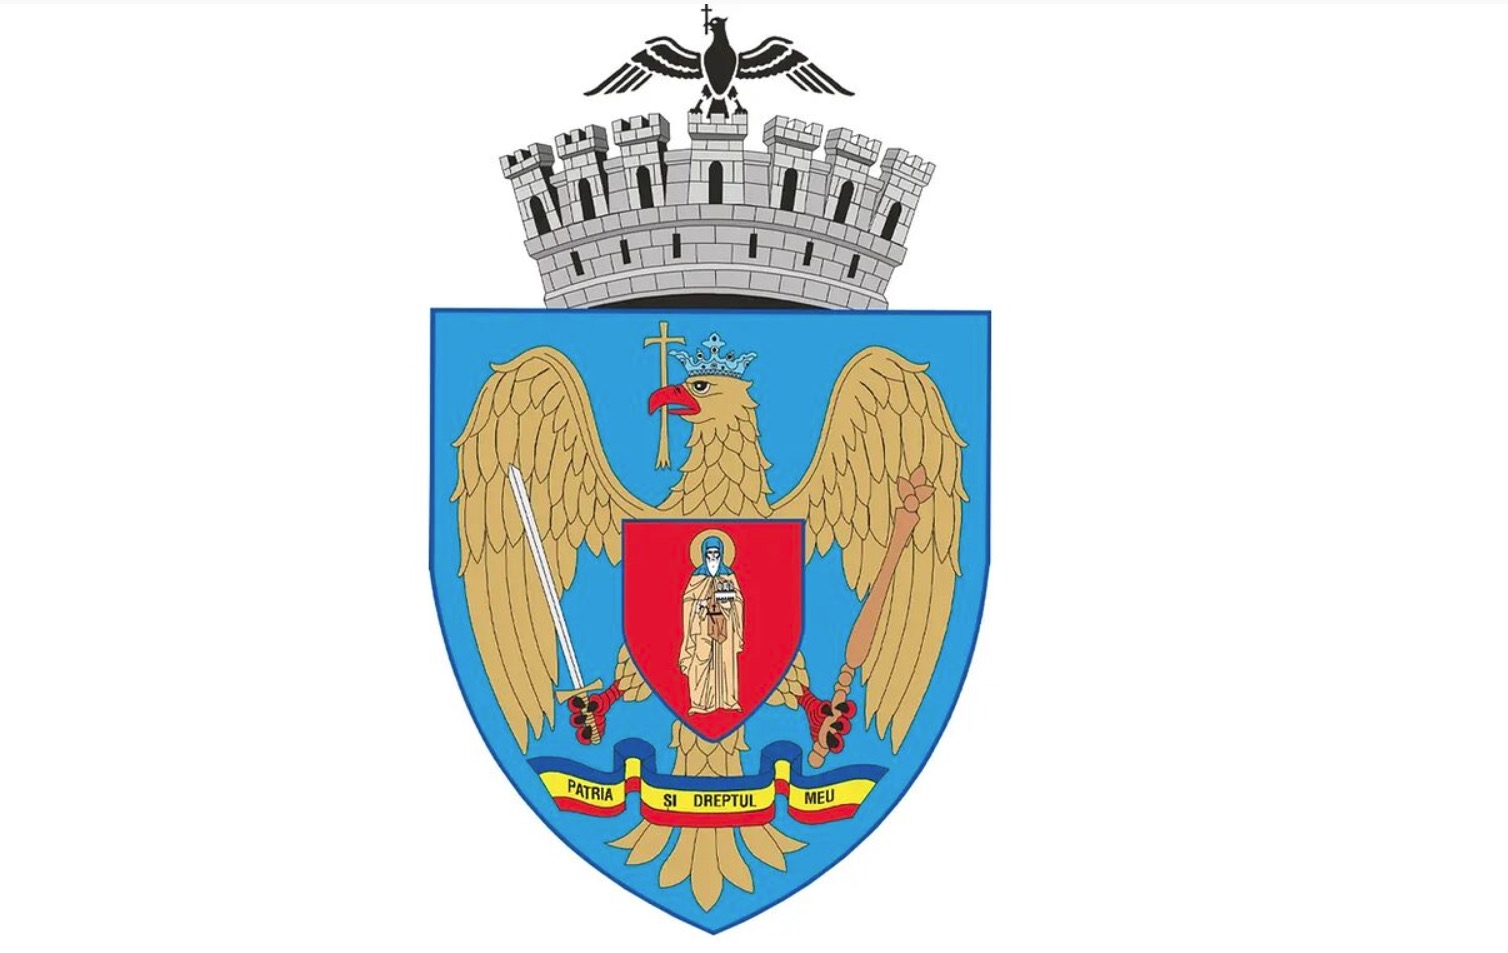 Les armoiries de la capitale représenteront saint Dimitri le Nouveau, le patron de Bucarest